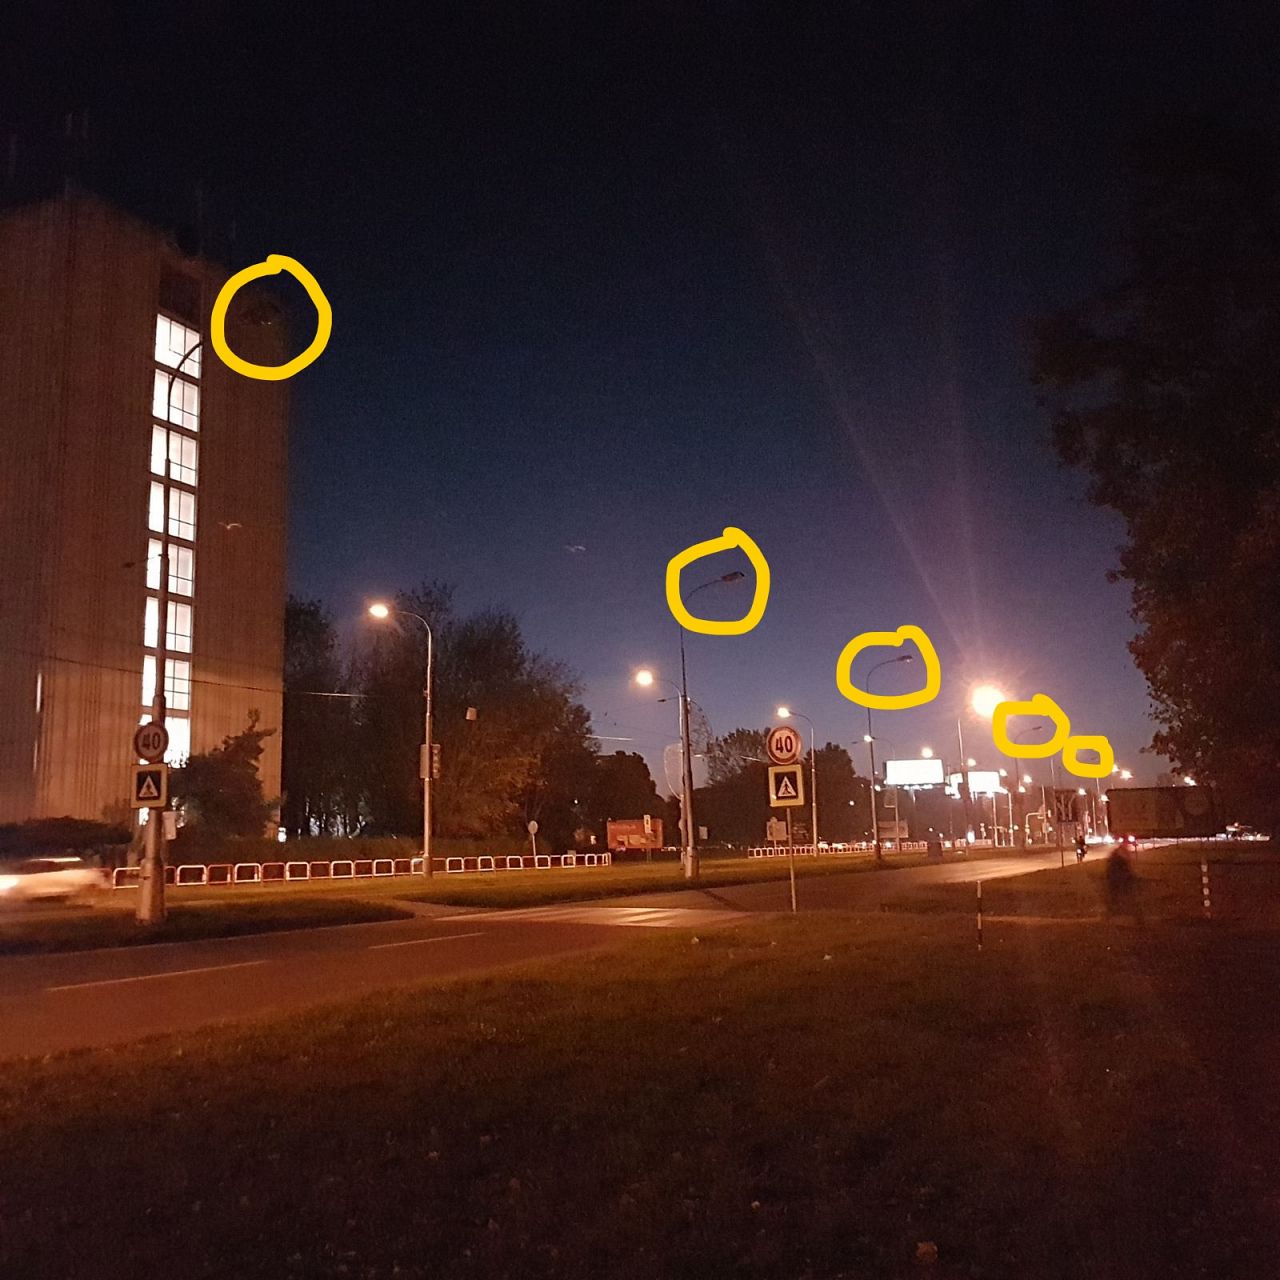 Ružinovská-osvetlenie-nefunkčné, Ružinov, Bratislava | Odkazprestarostu.sk